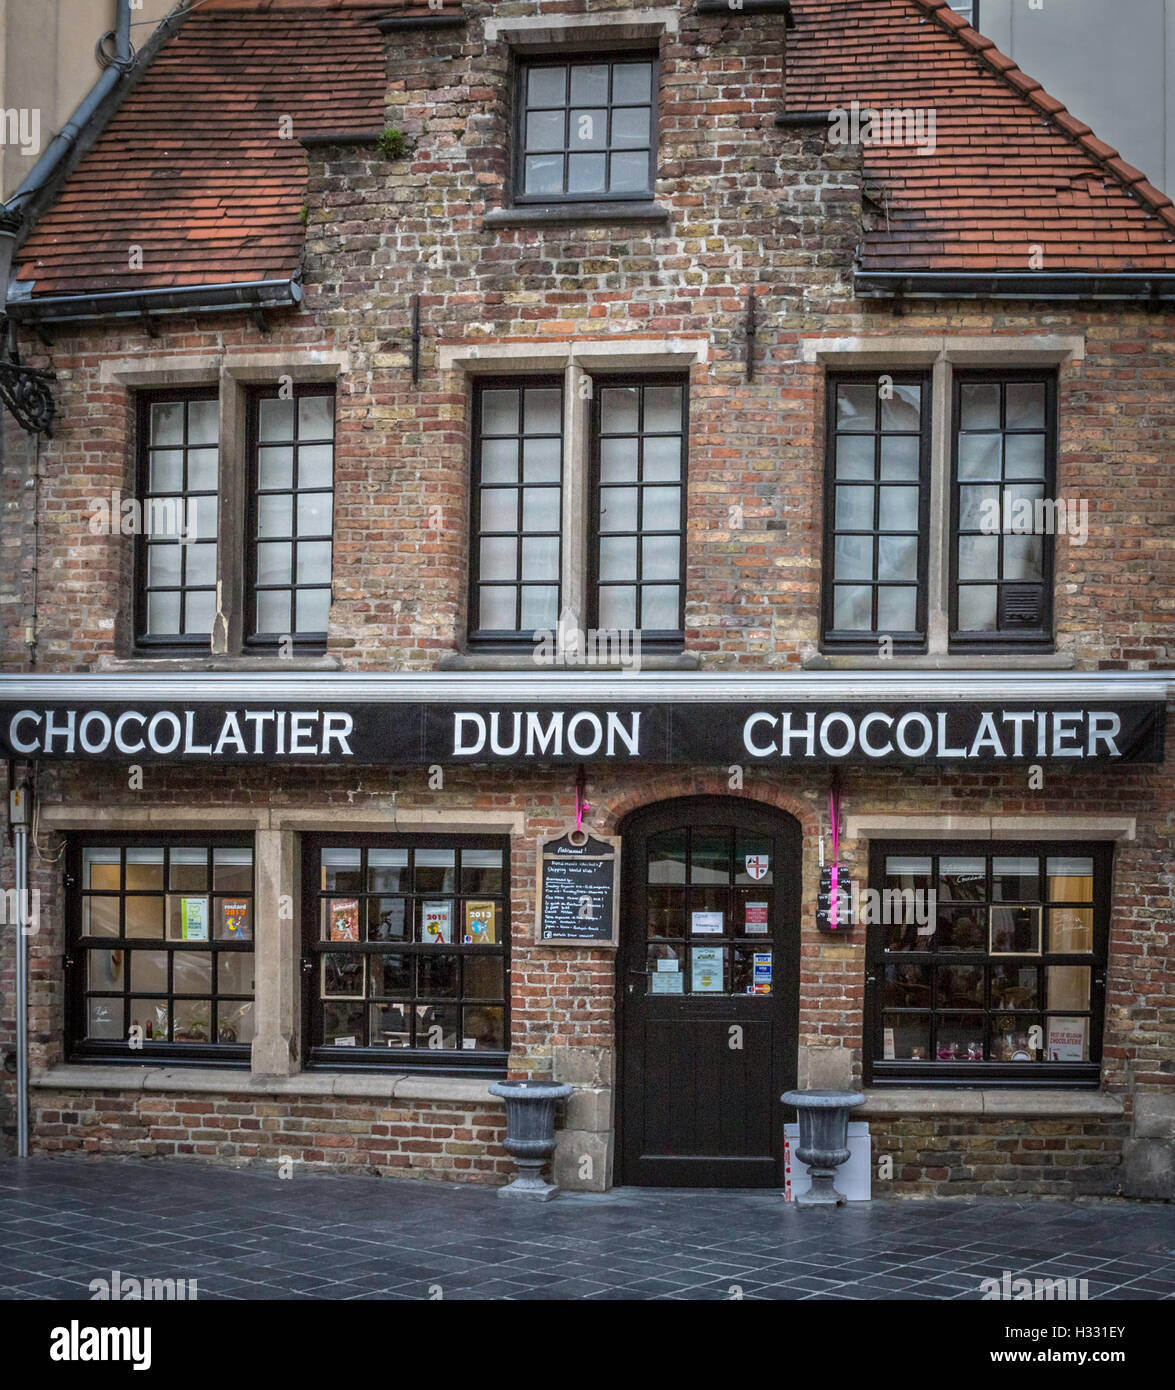 Dumon Chocolatier est une attraction touristique populaire à Bruges, Belgique. Il est célèbre pour ses délicieux chocolats faits maison. Banque D'Images